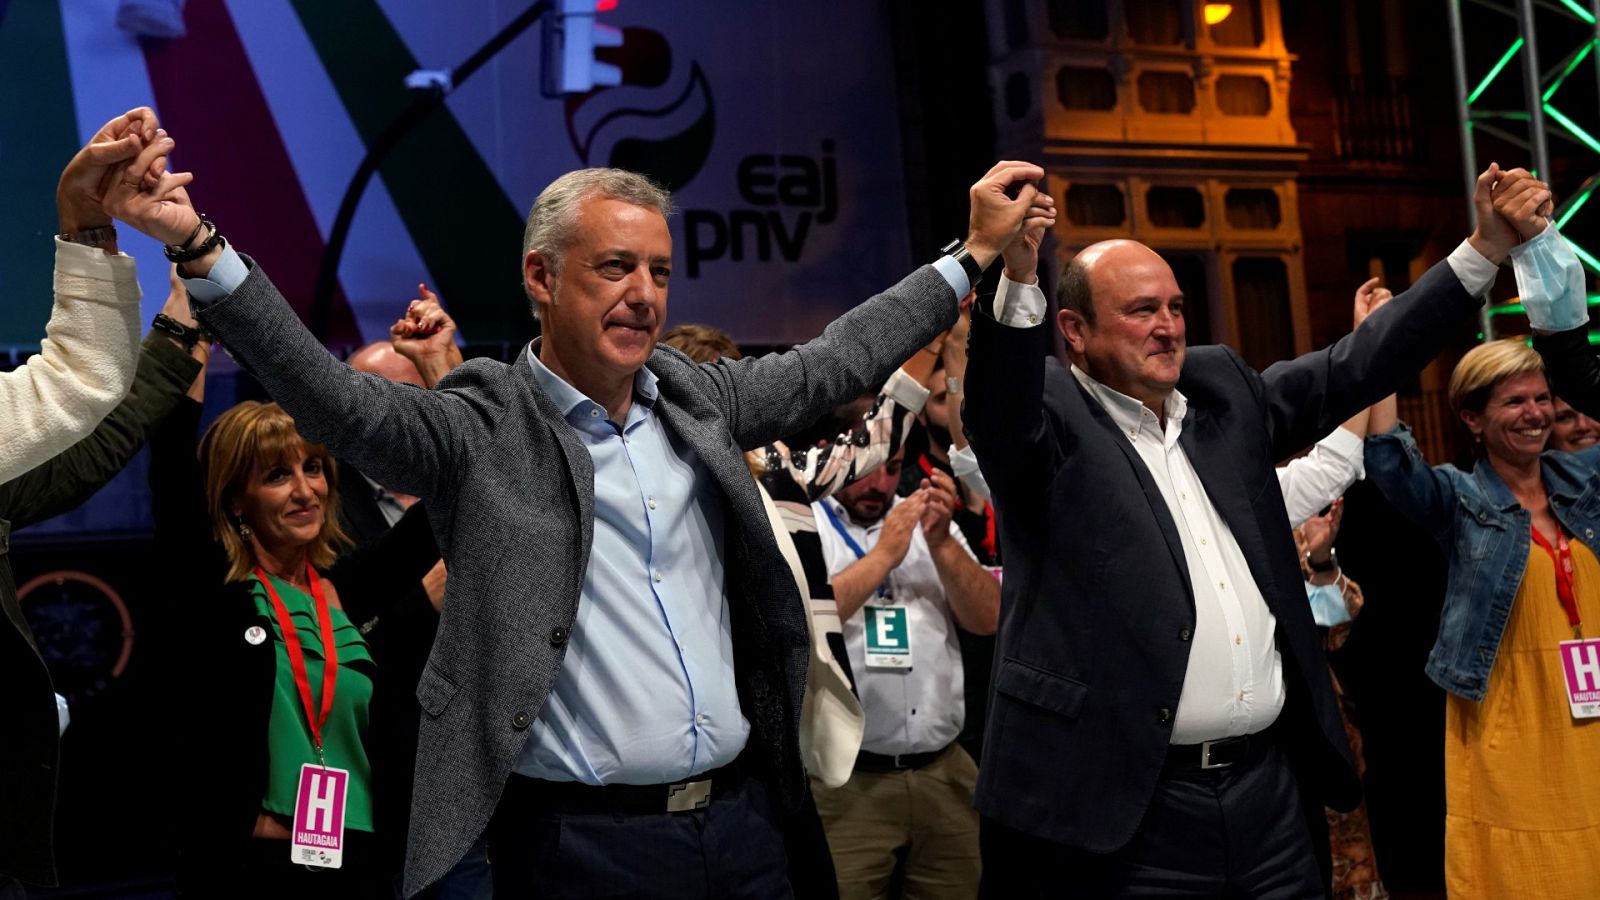 Elecciones vascas: Urkullu se muestra "satisfecho" tras conseguir tres escaños más que en 2016